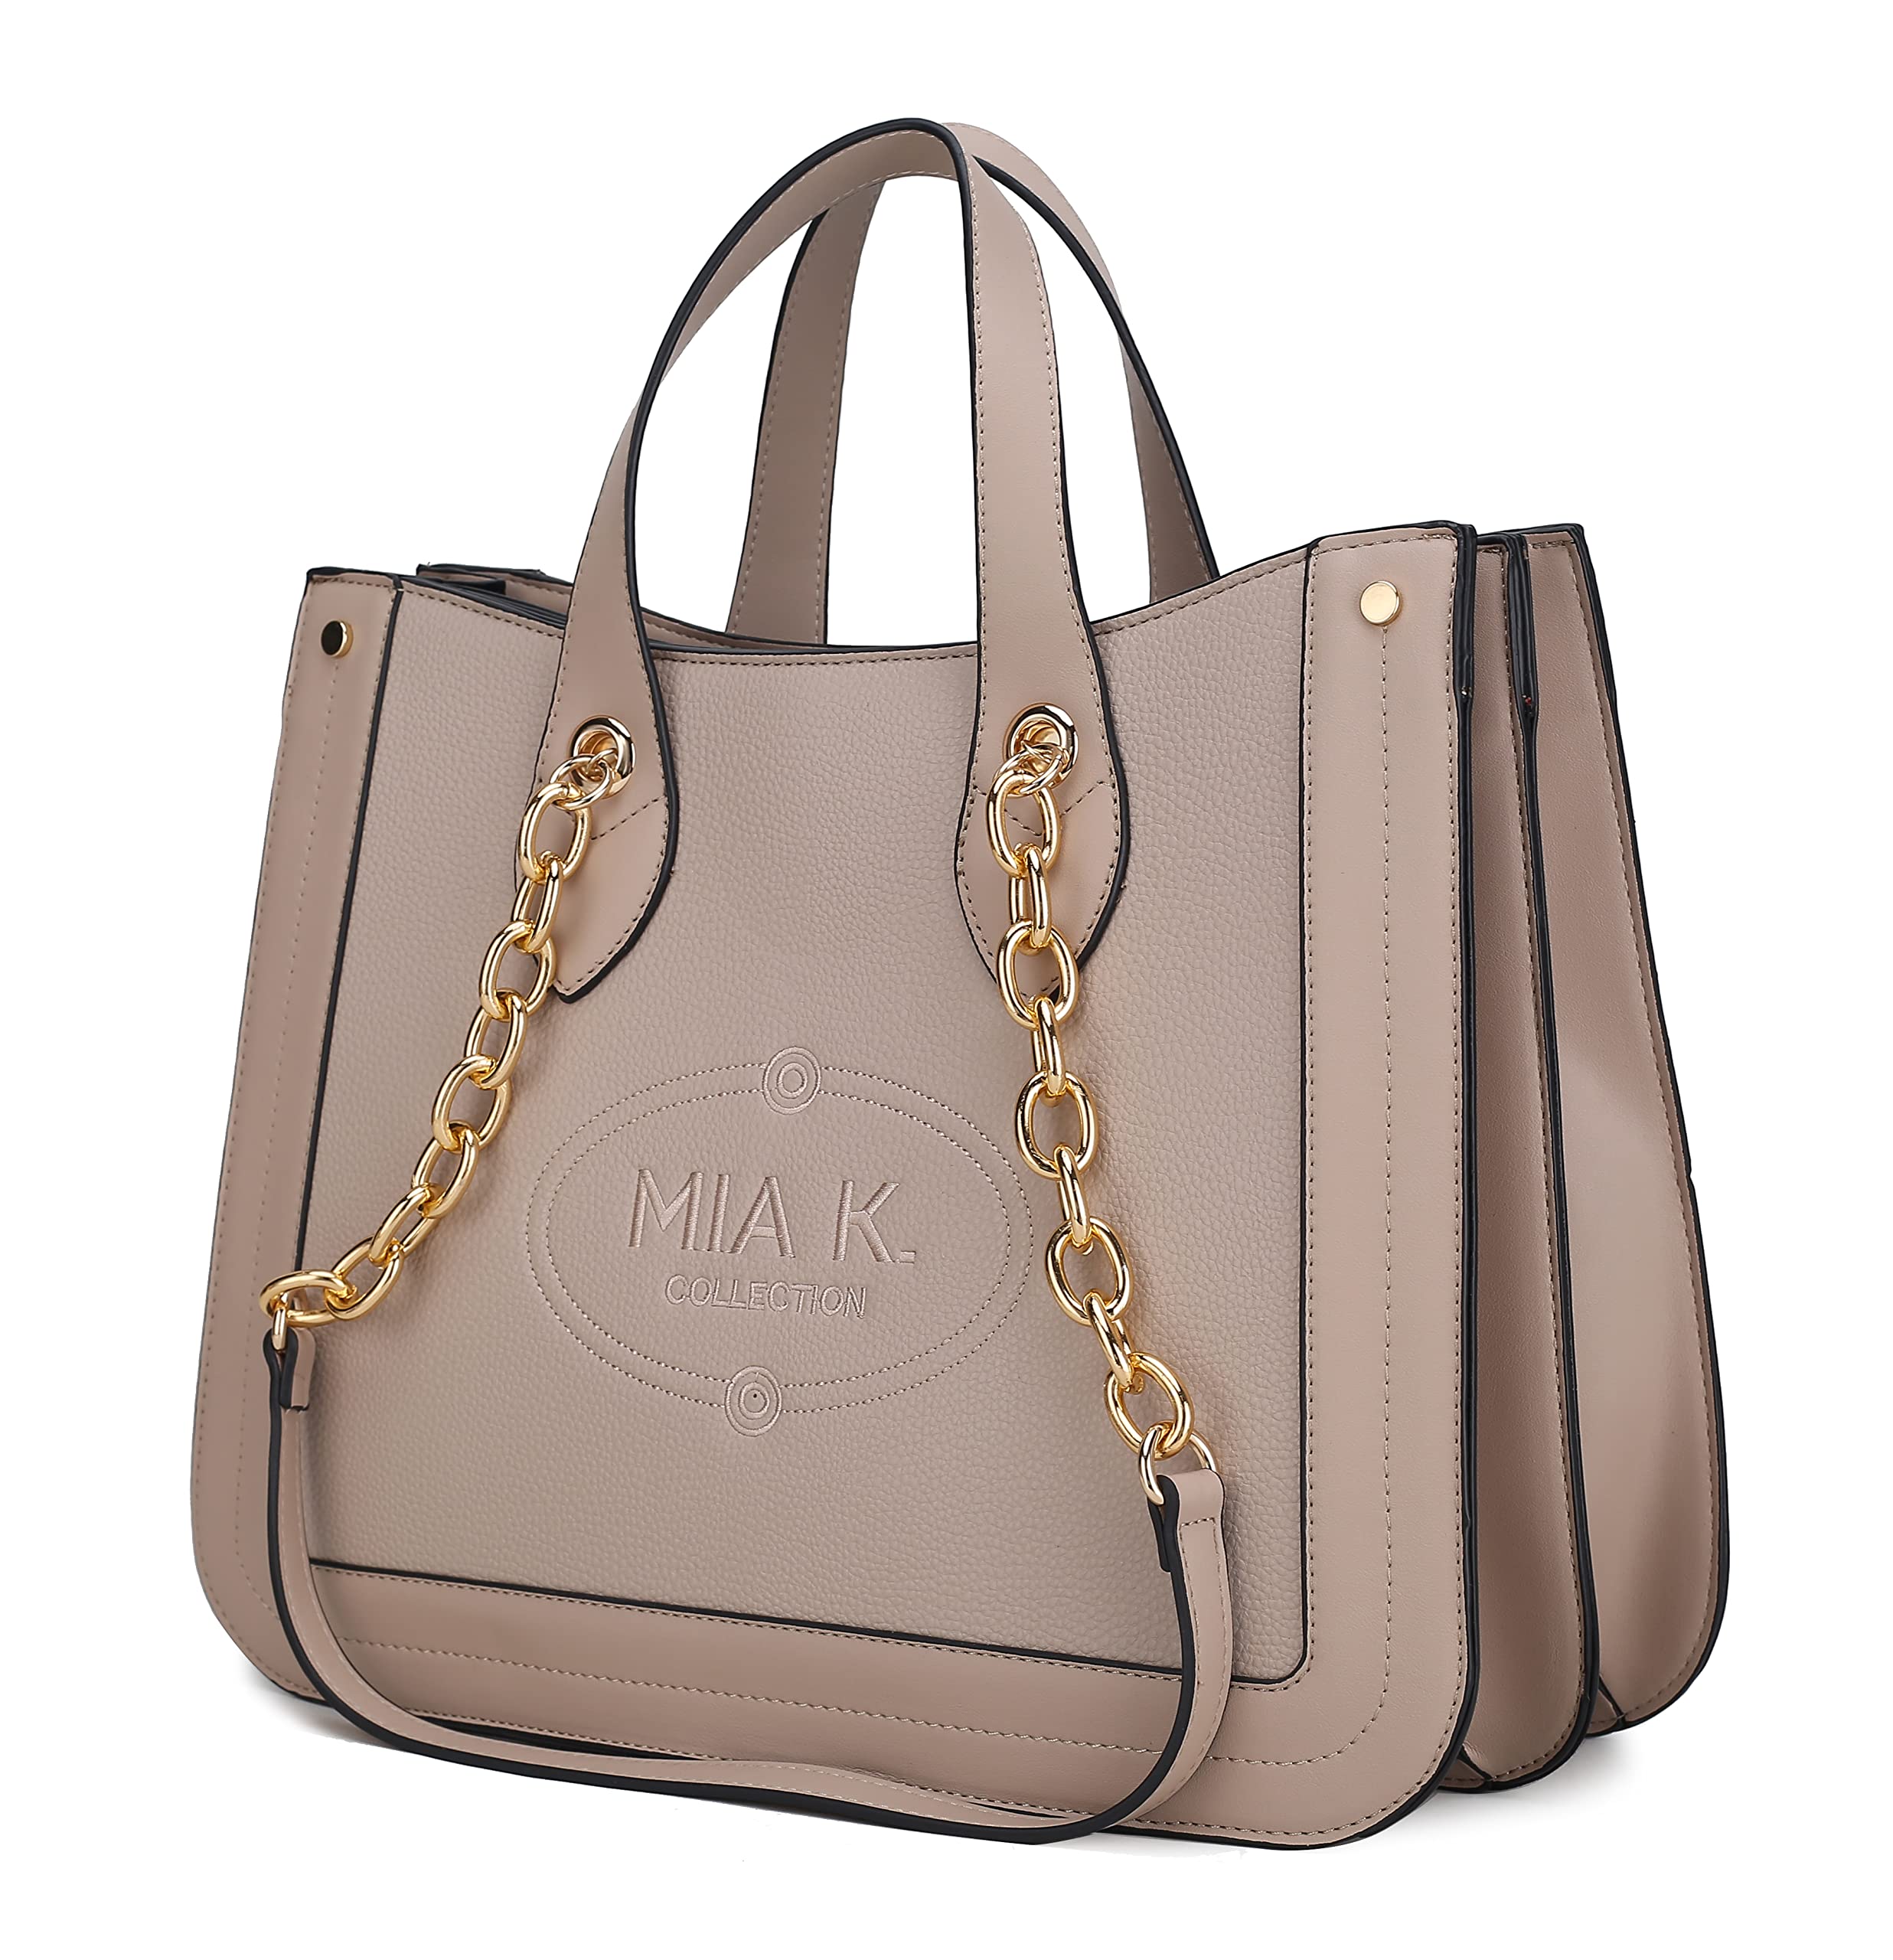 MKF Collection Tote Bag for Women, Vegan Leather Top-Handle Shoulder bag Purse Tote Satchel Handbag